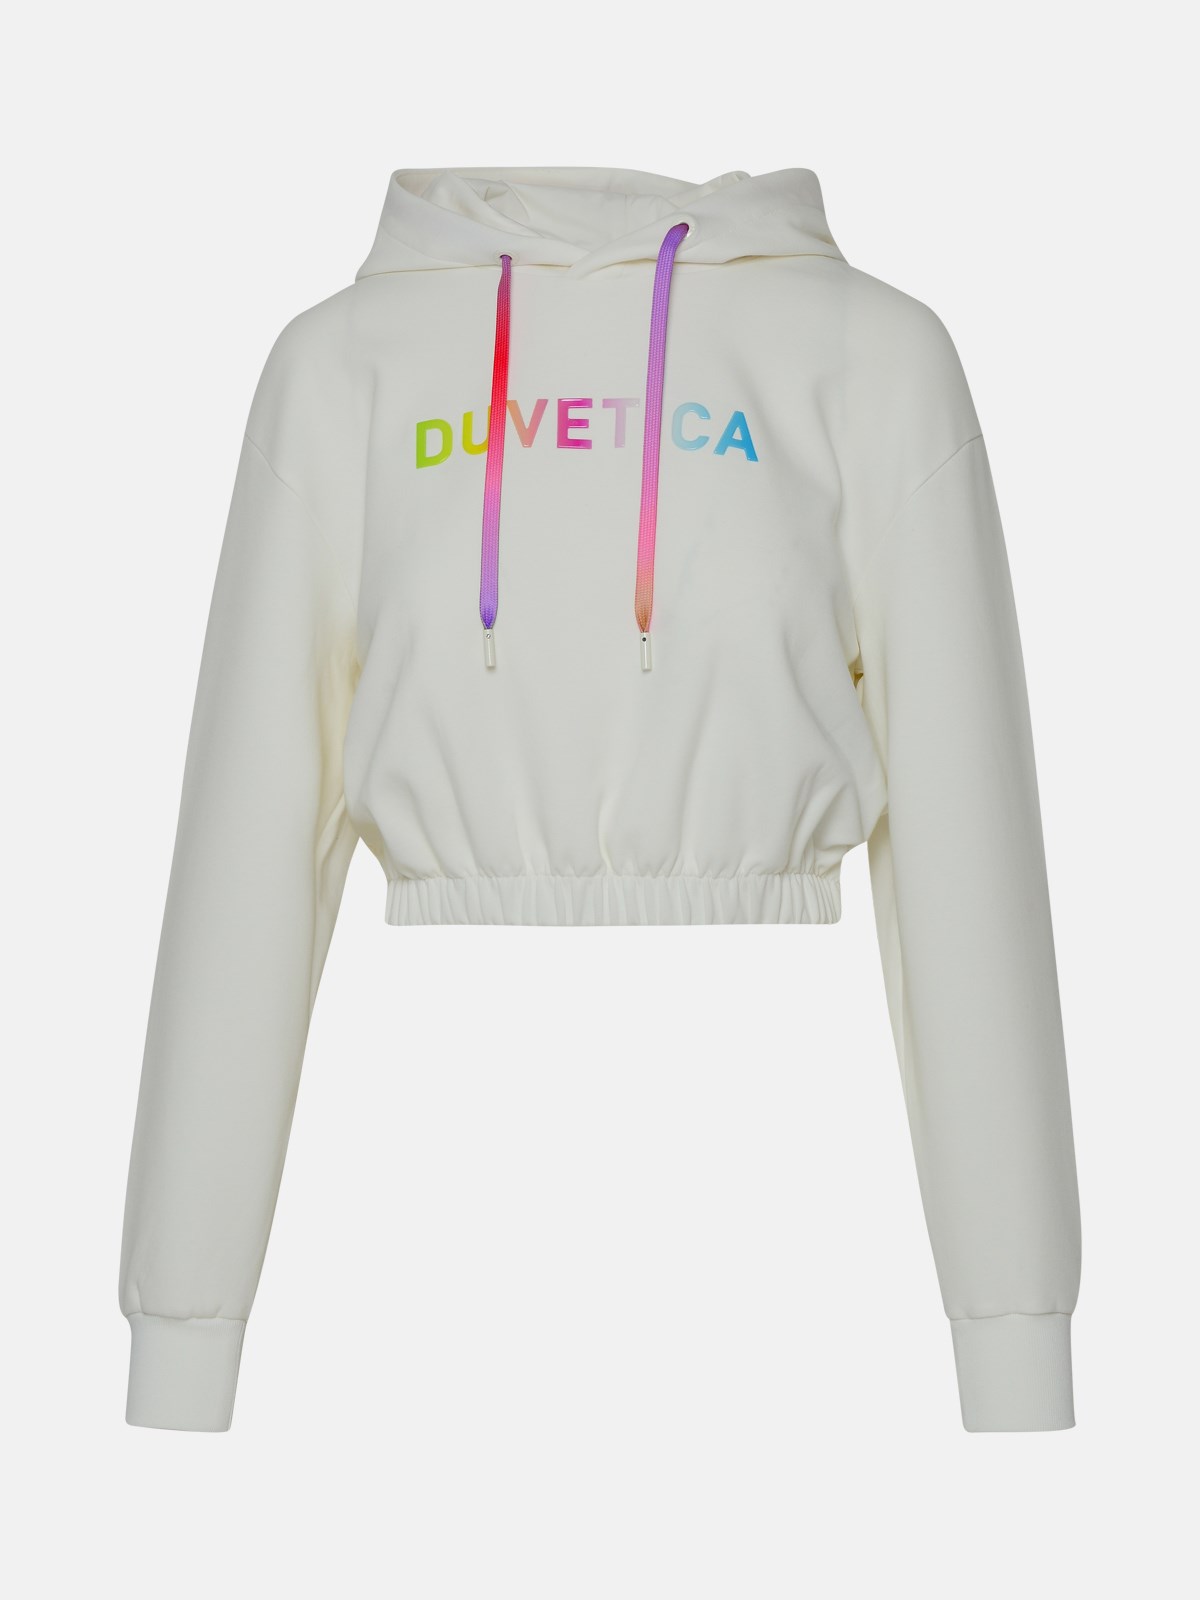 Duvetica Kids' White Cotton Torinella Sweatshirt In Ivory